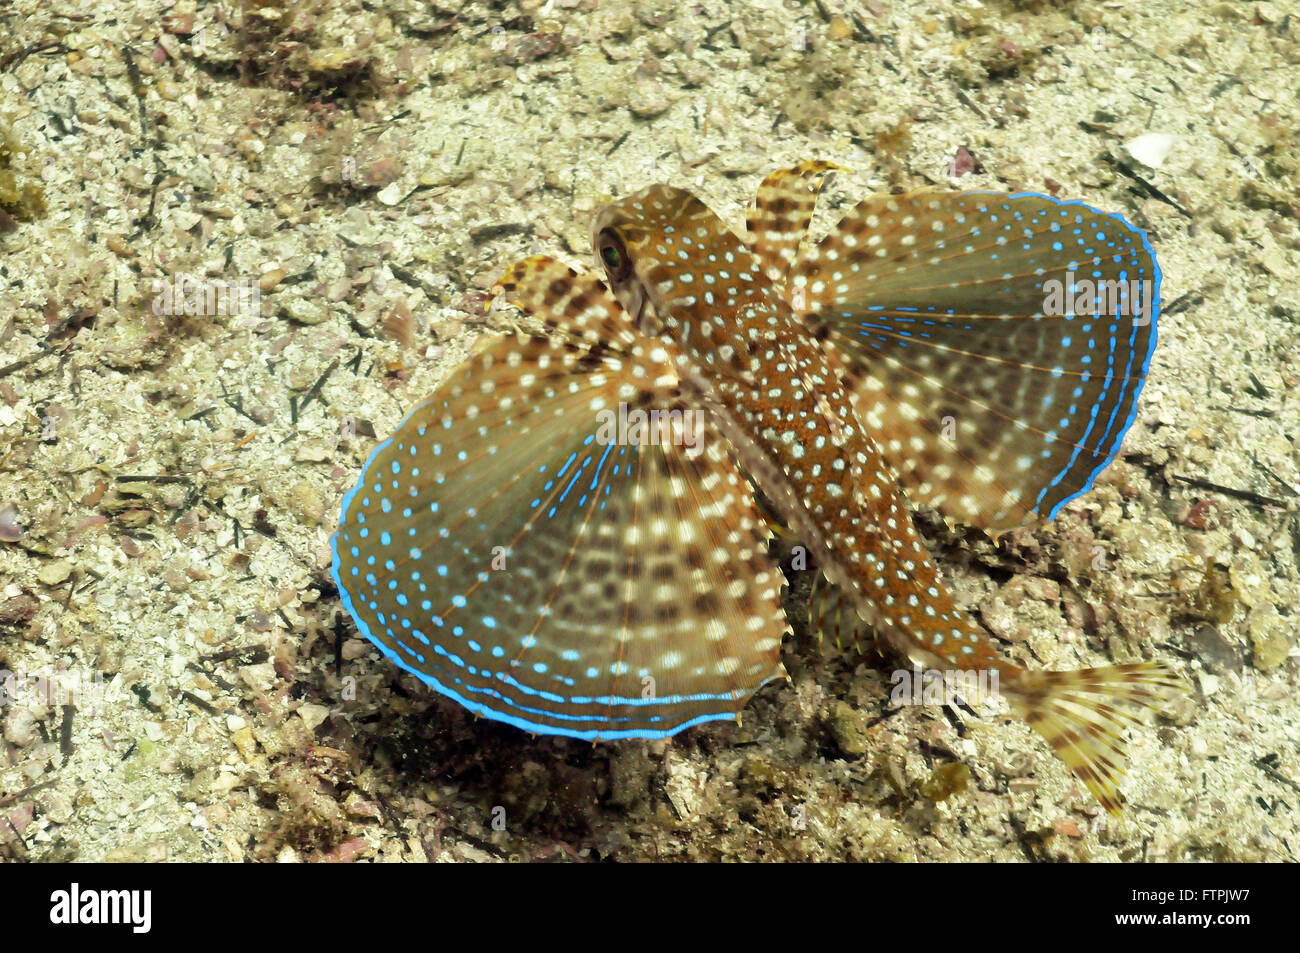 Unterwasser-Bilder an der brasilianischen Küste - Unglück - Dactylopterus volitans Stockfoto